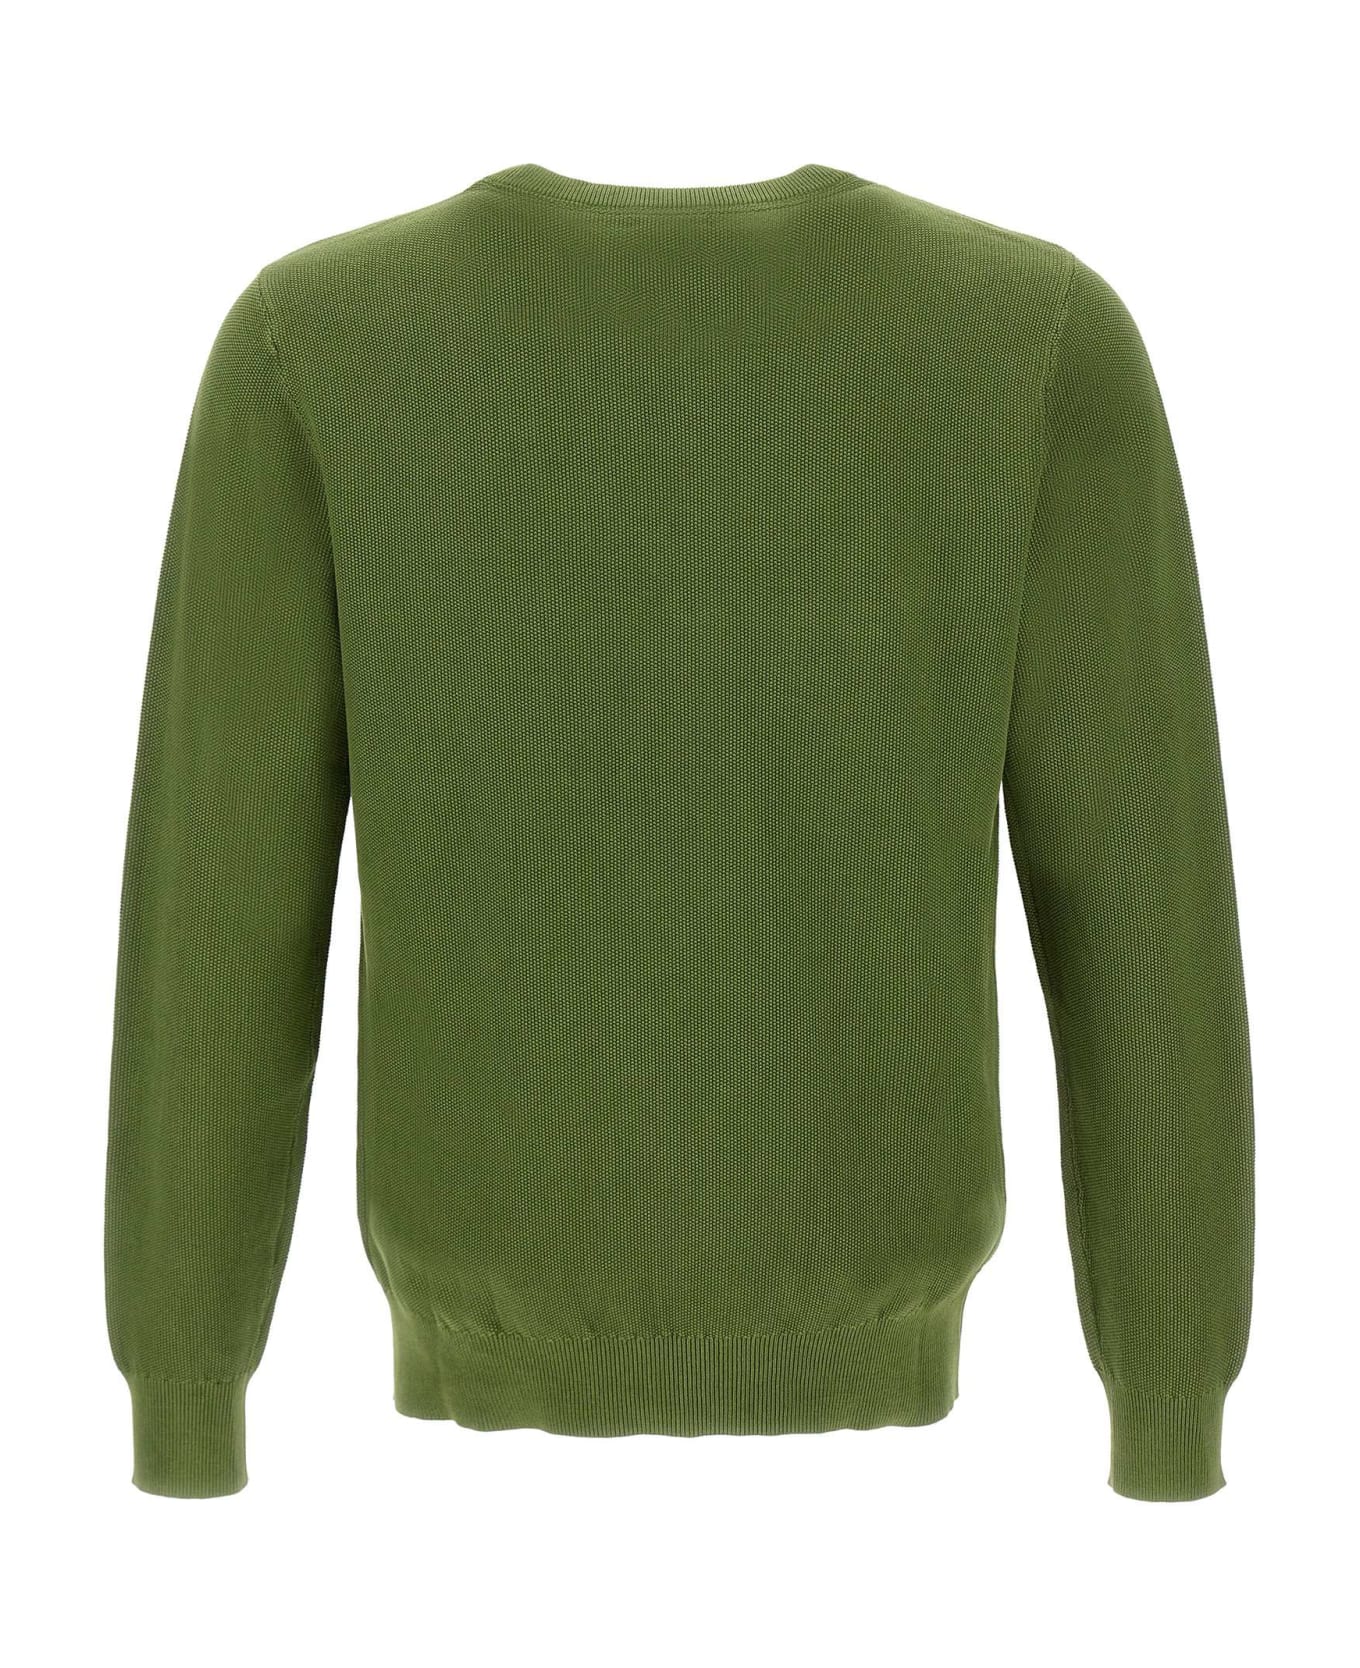 Sun 68 'round Vintage' Sweater Cotton - Green